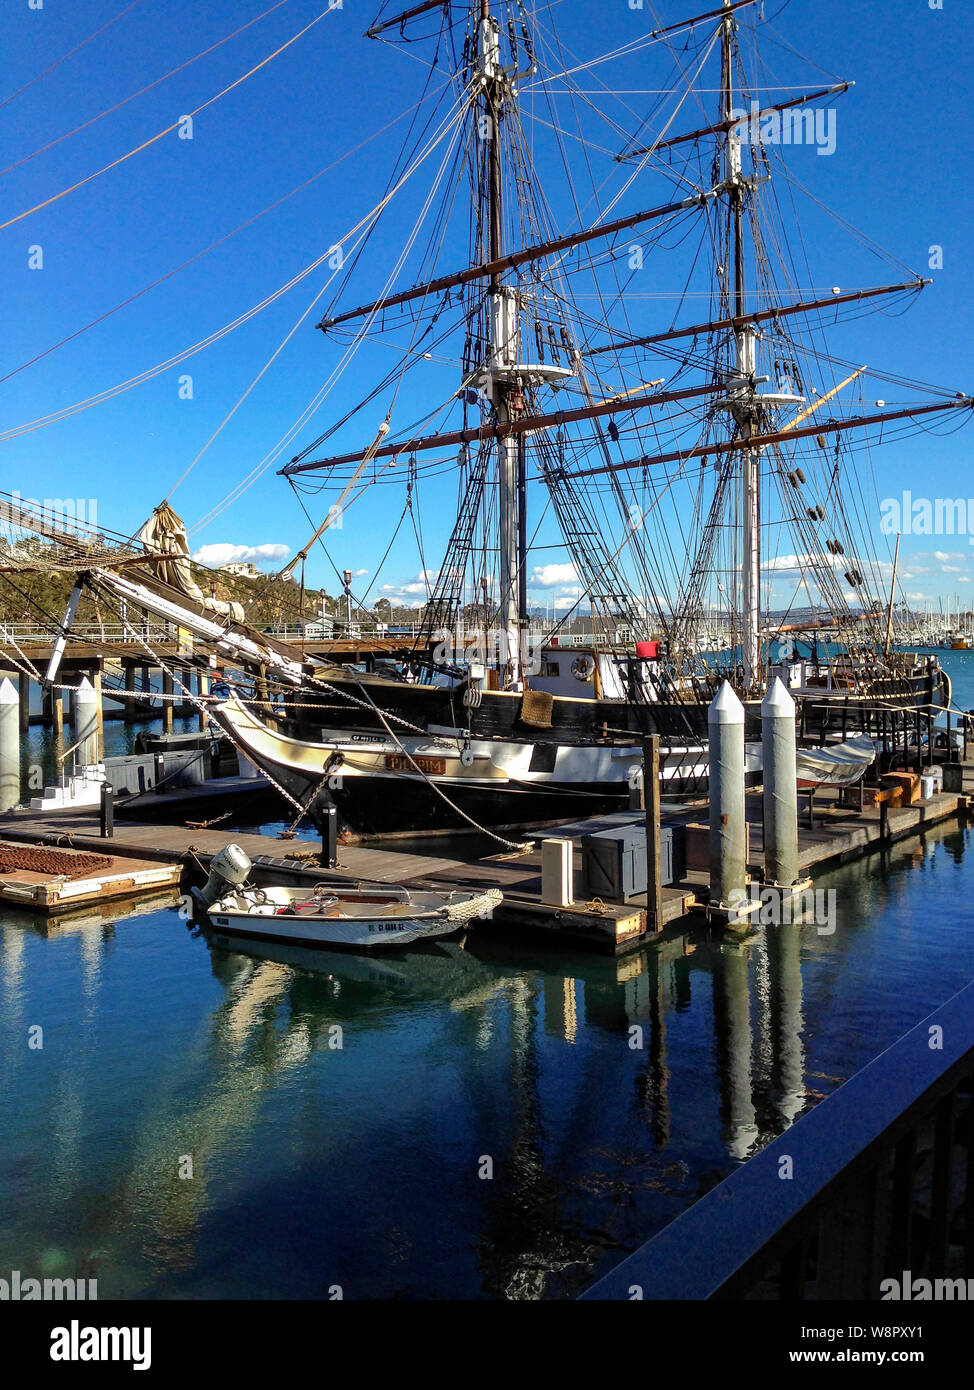 Dana Point, CA/USA-Feb 1, 2016: Replik von Segeln brig Pilgrim, mit Reflexionen des Tall Ship im Wasser. Stockfoto